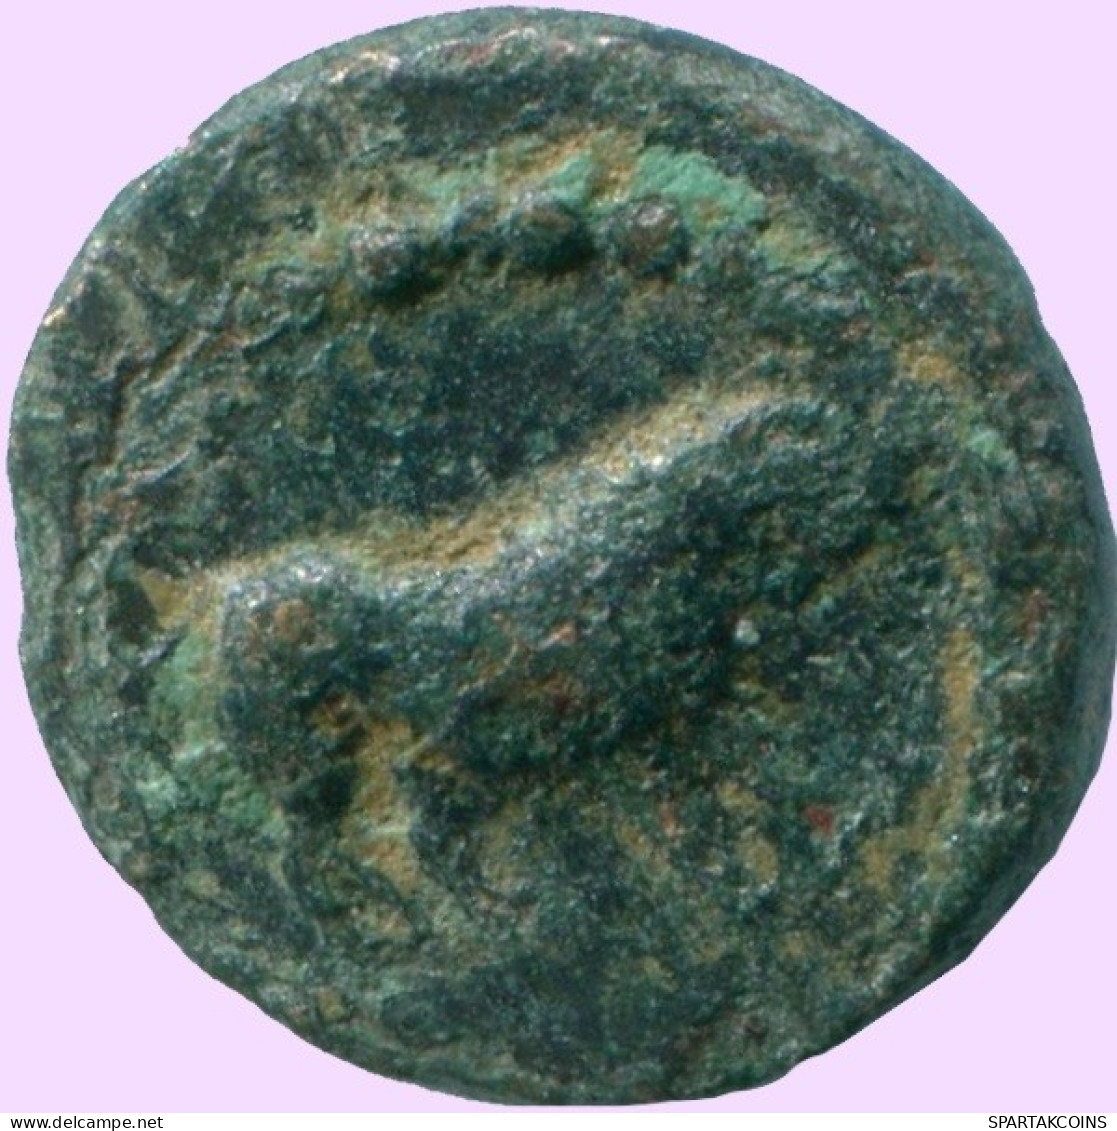 Auténtico Original GRIEGO ANTIGUO Moneda BULL 1.72g/13.04mm #ANC13324.8.E.A - Griekenland